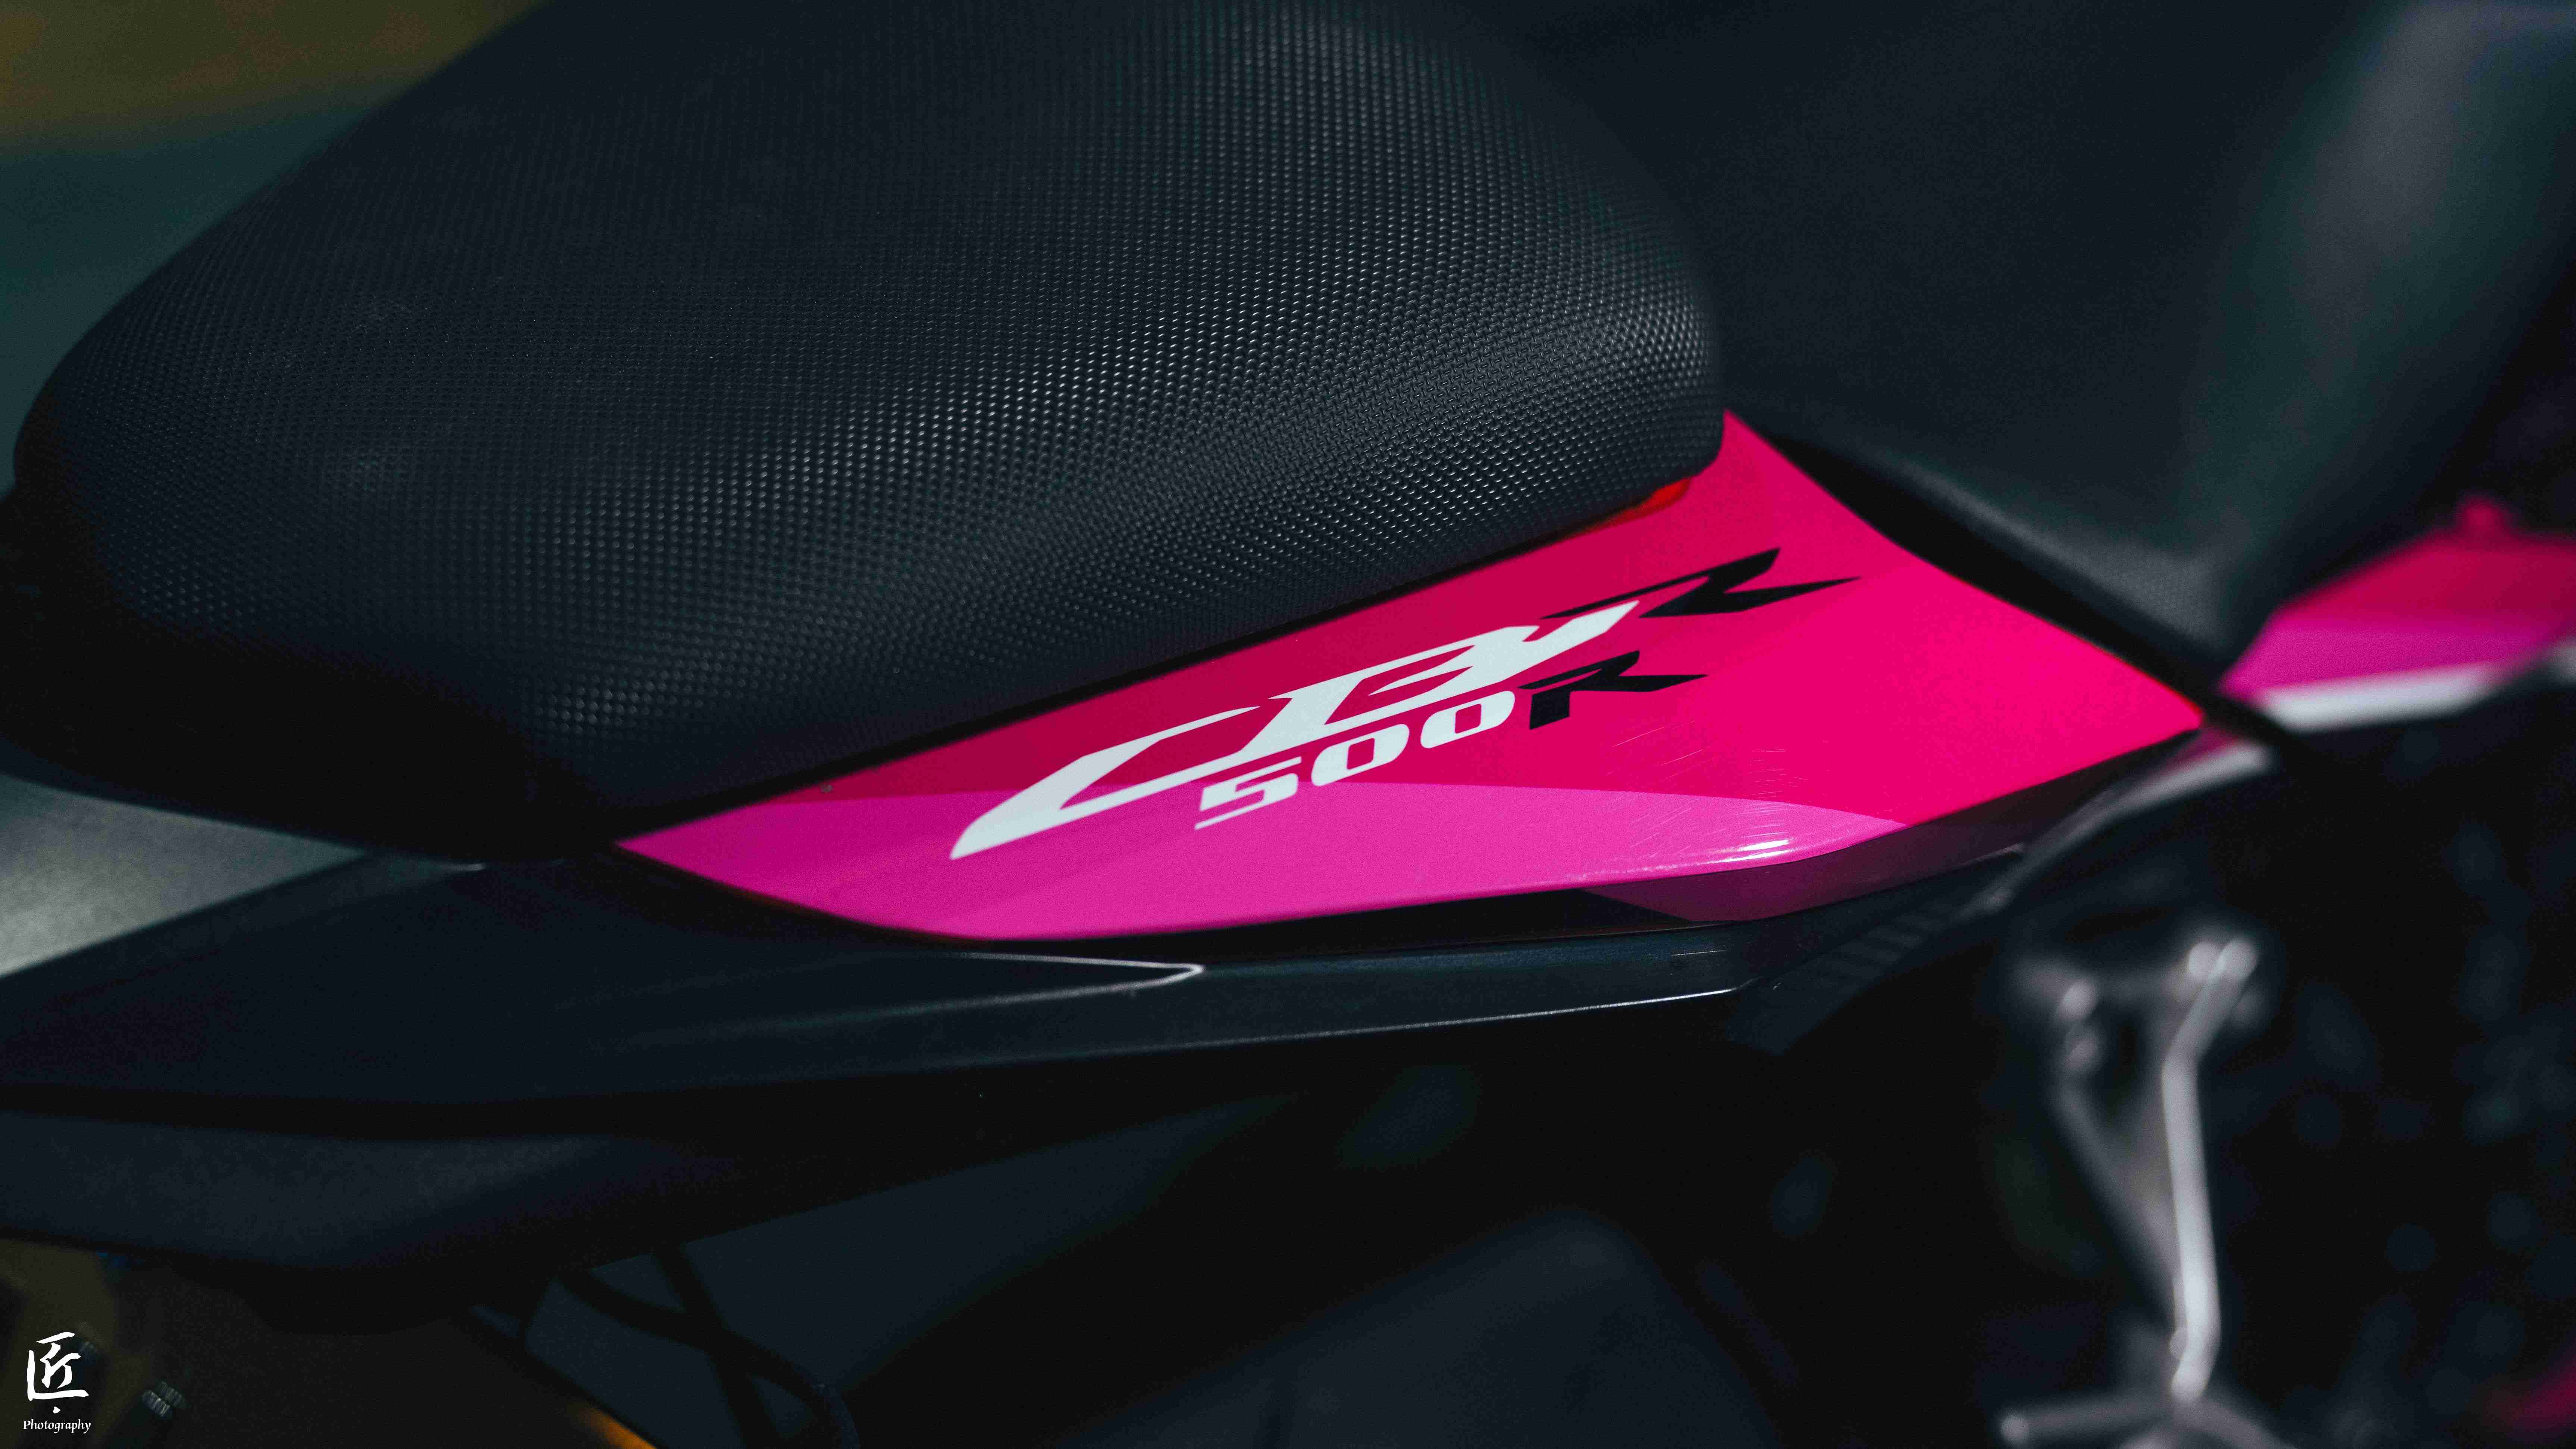 HONDA CBR500R - 中古/二手車出售中 2019 Honda CBR500 R ABS 桃粉運動彩繪 | 個人自售